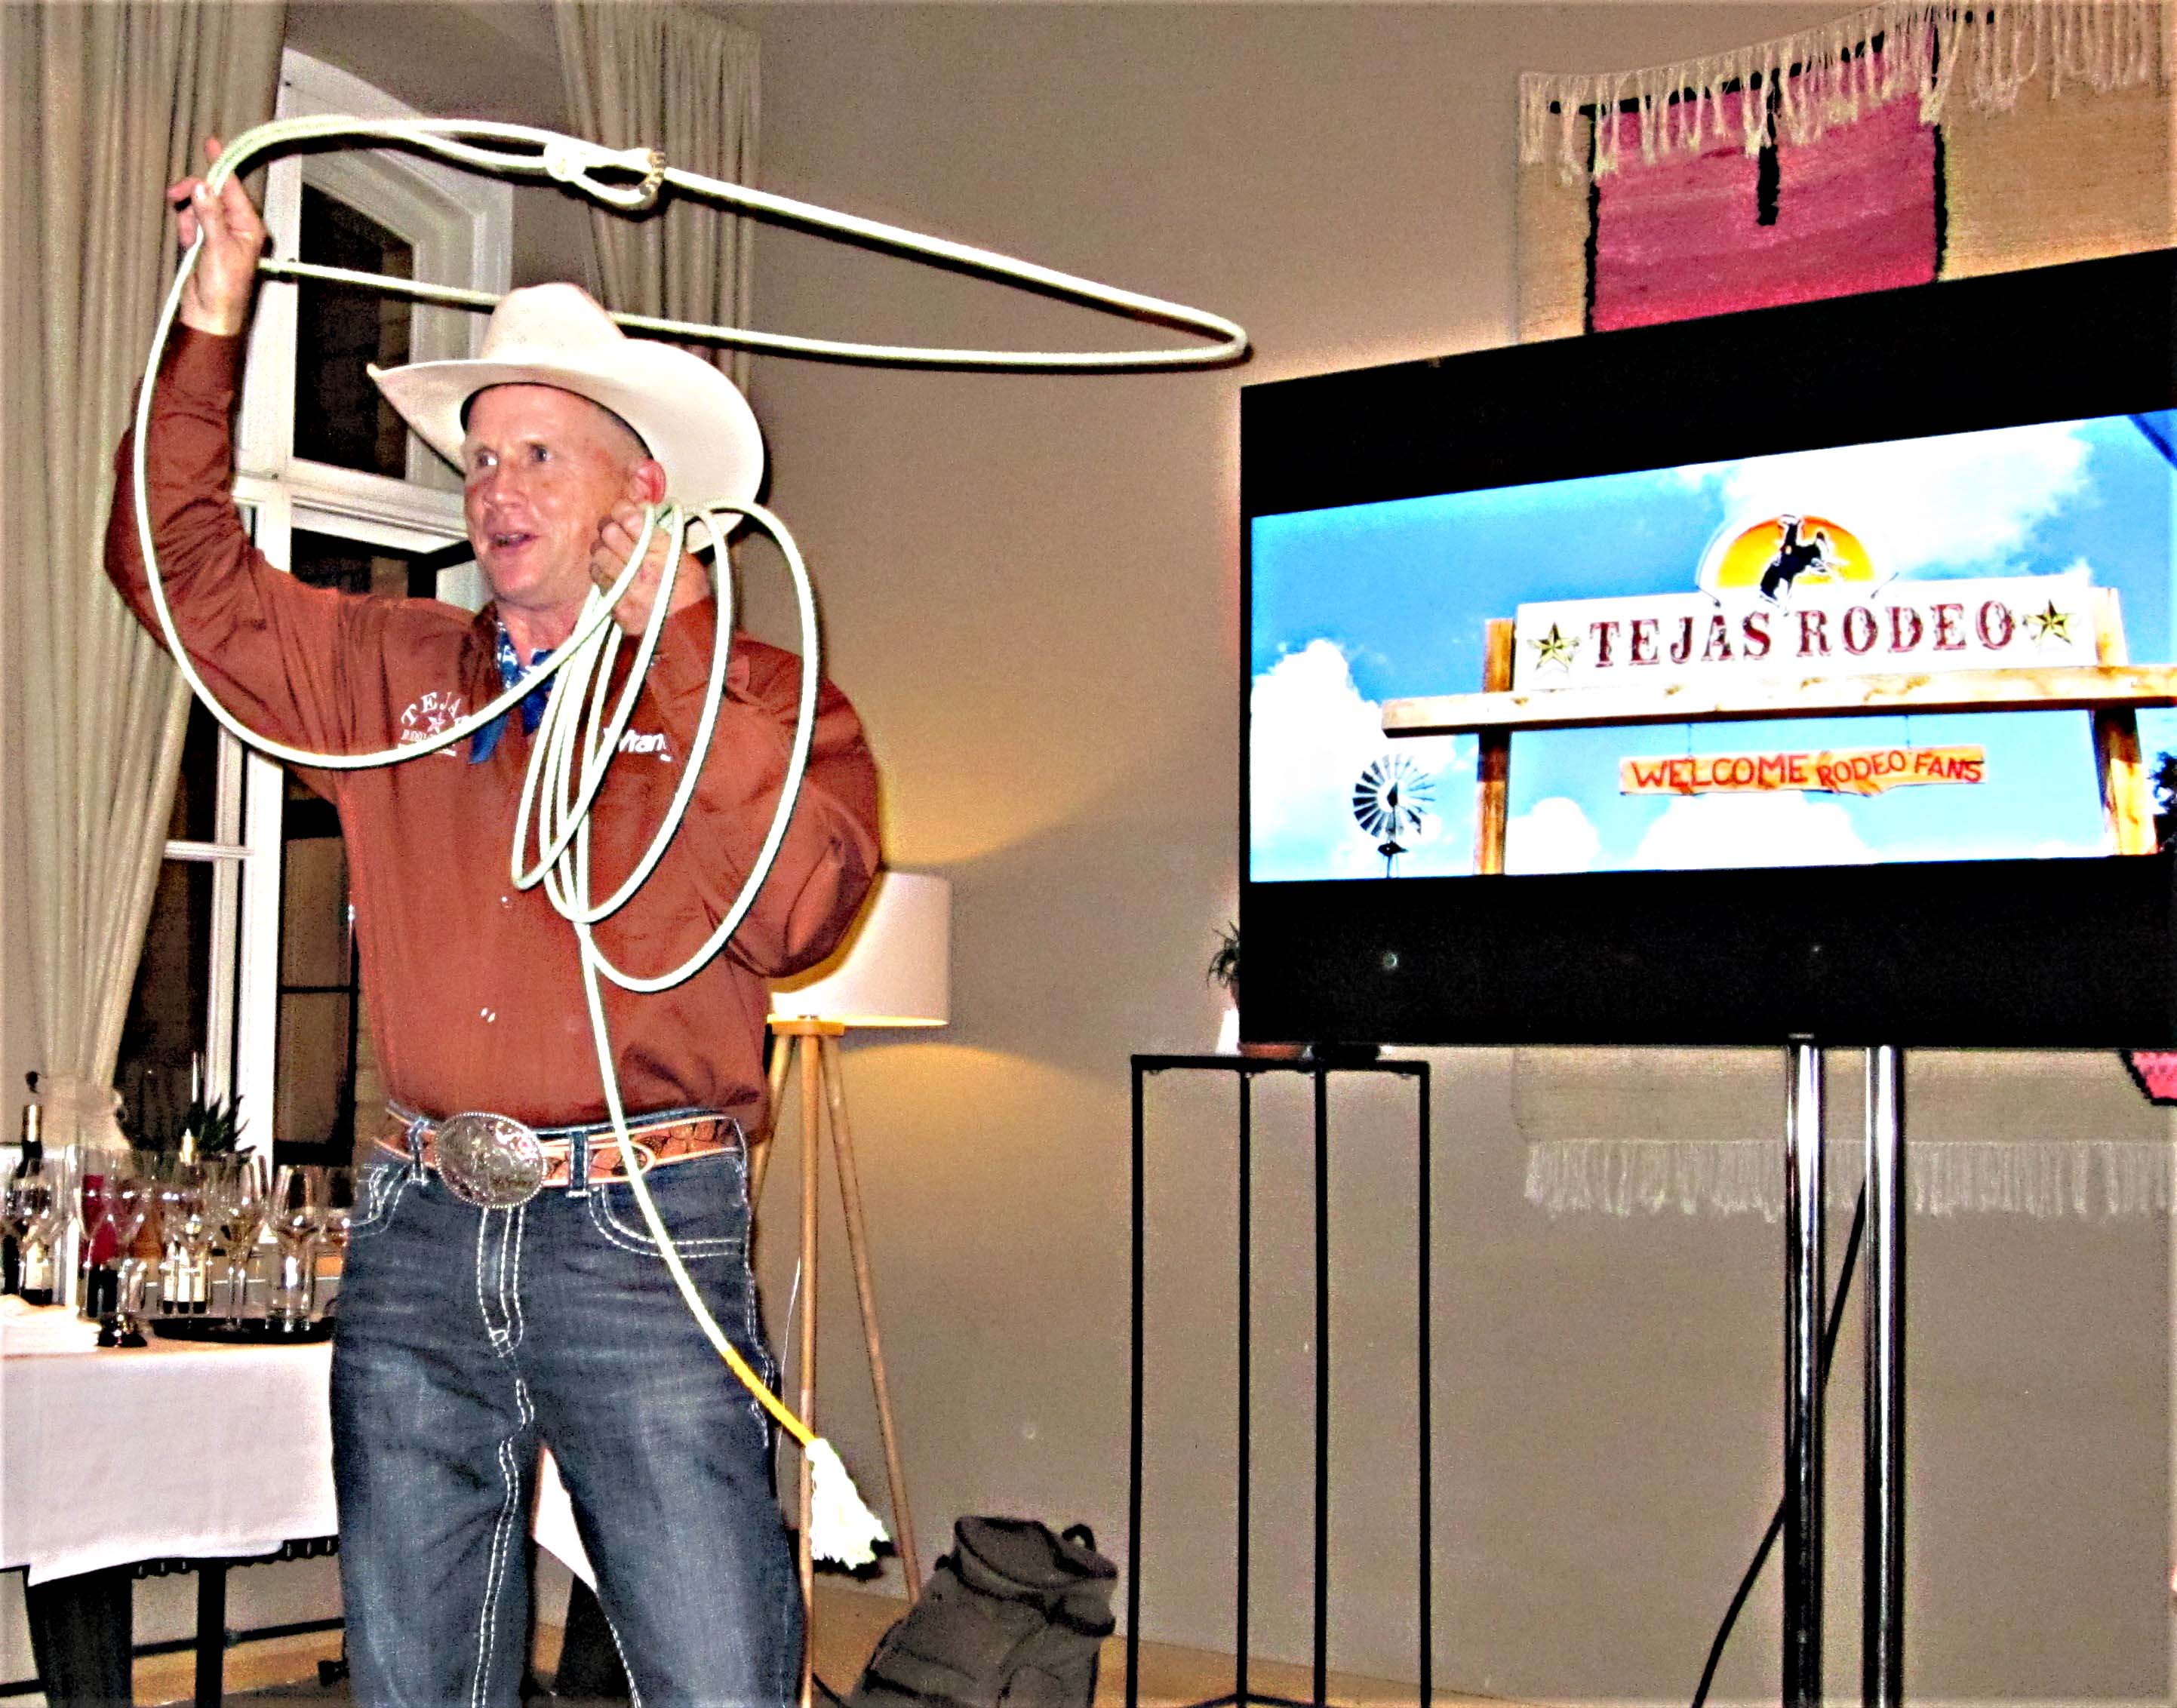 Zeigte bei der Präsentation eine kurze Kostprobe seines sportlichen Könnens: Cowboy und Rodeo-Spezialist Michael Furr. Foto: M. Weghenkel